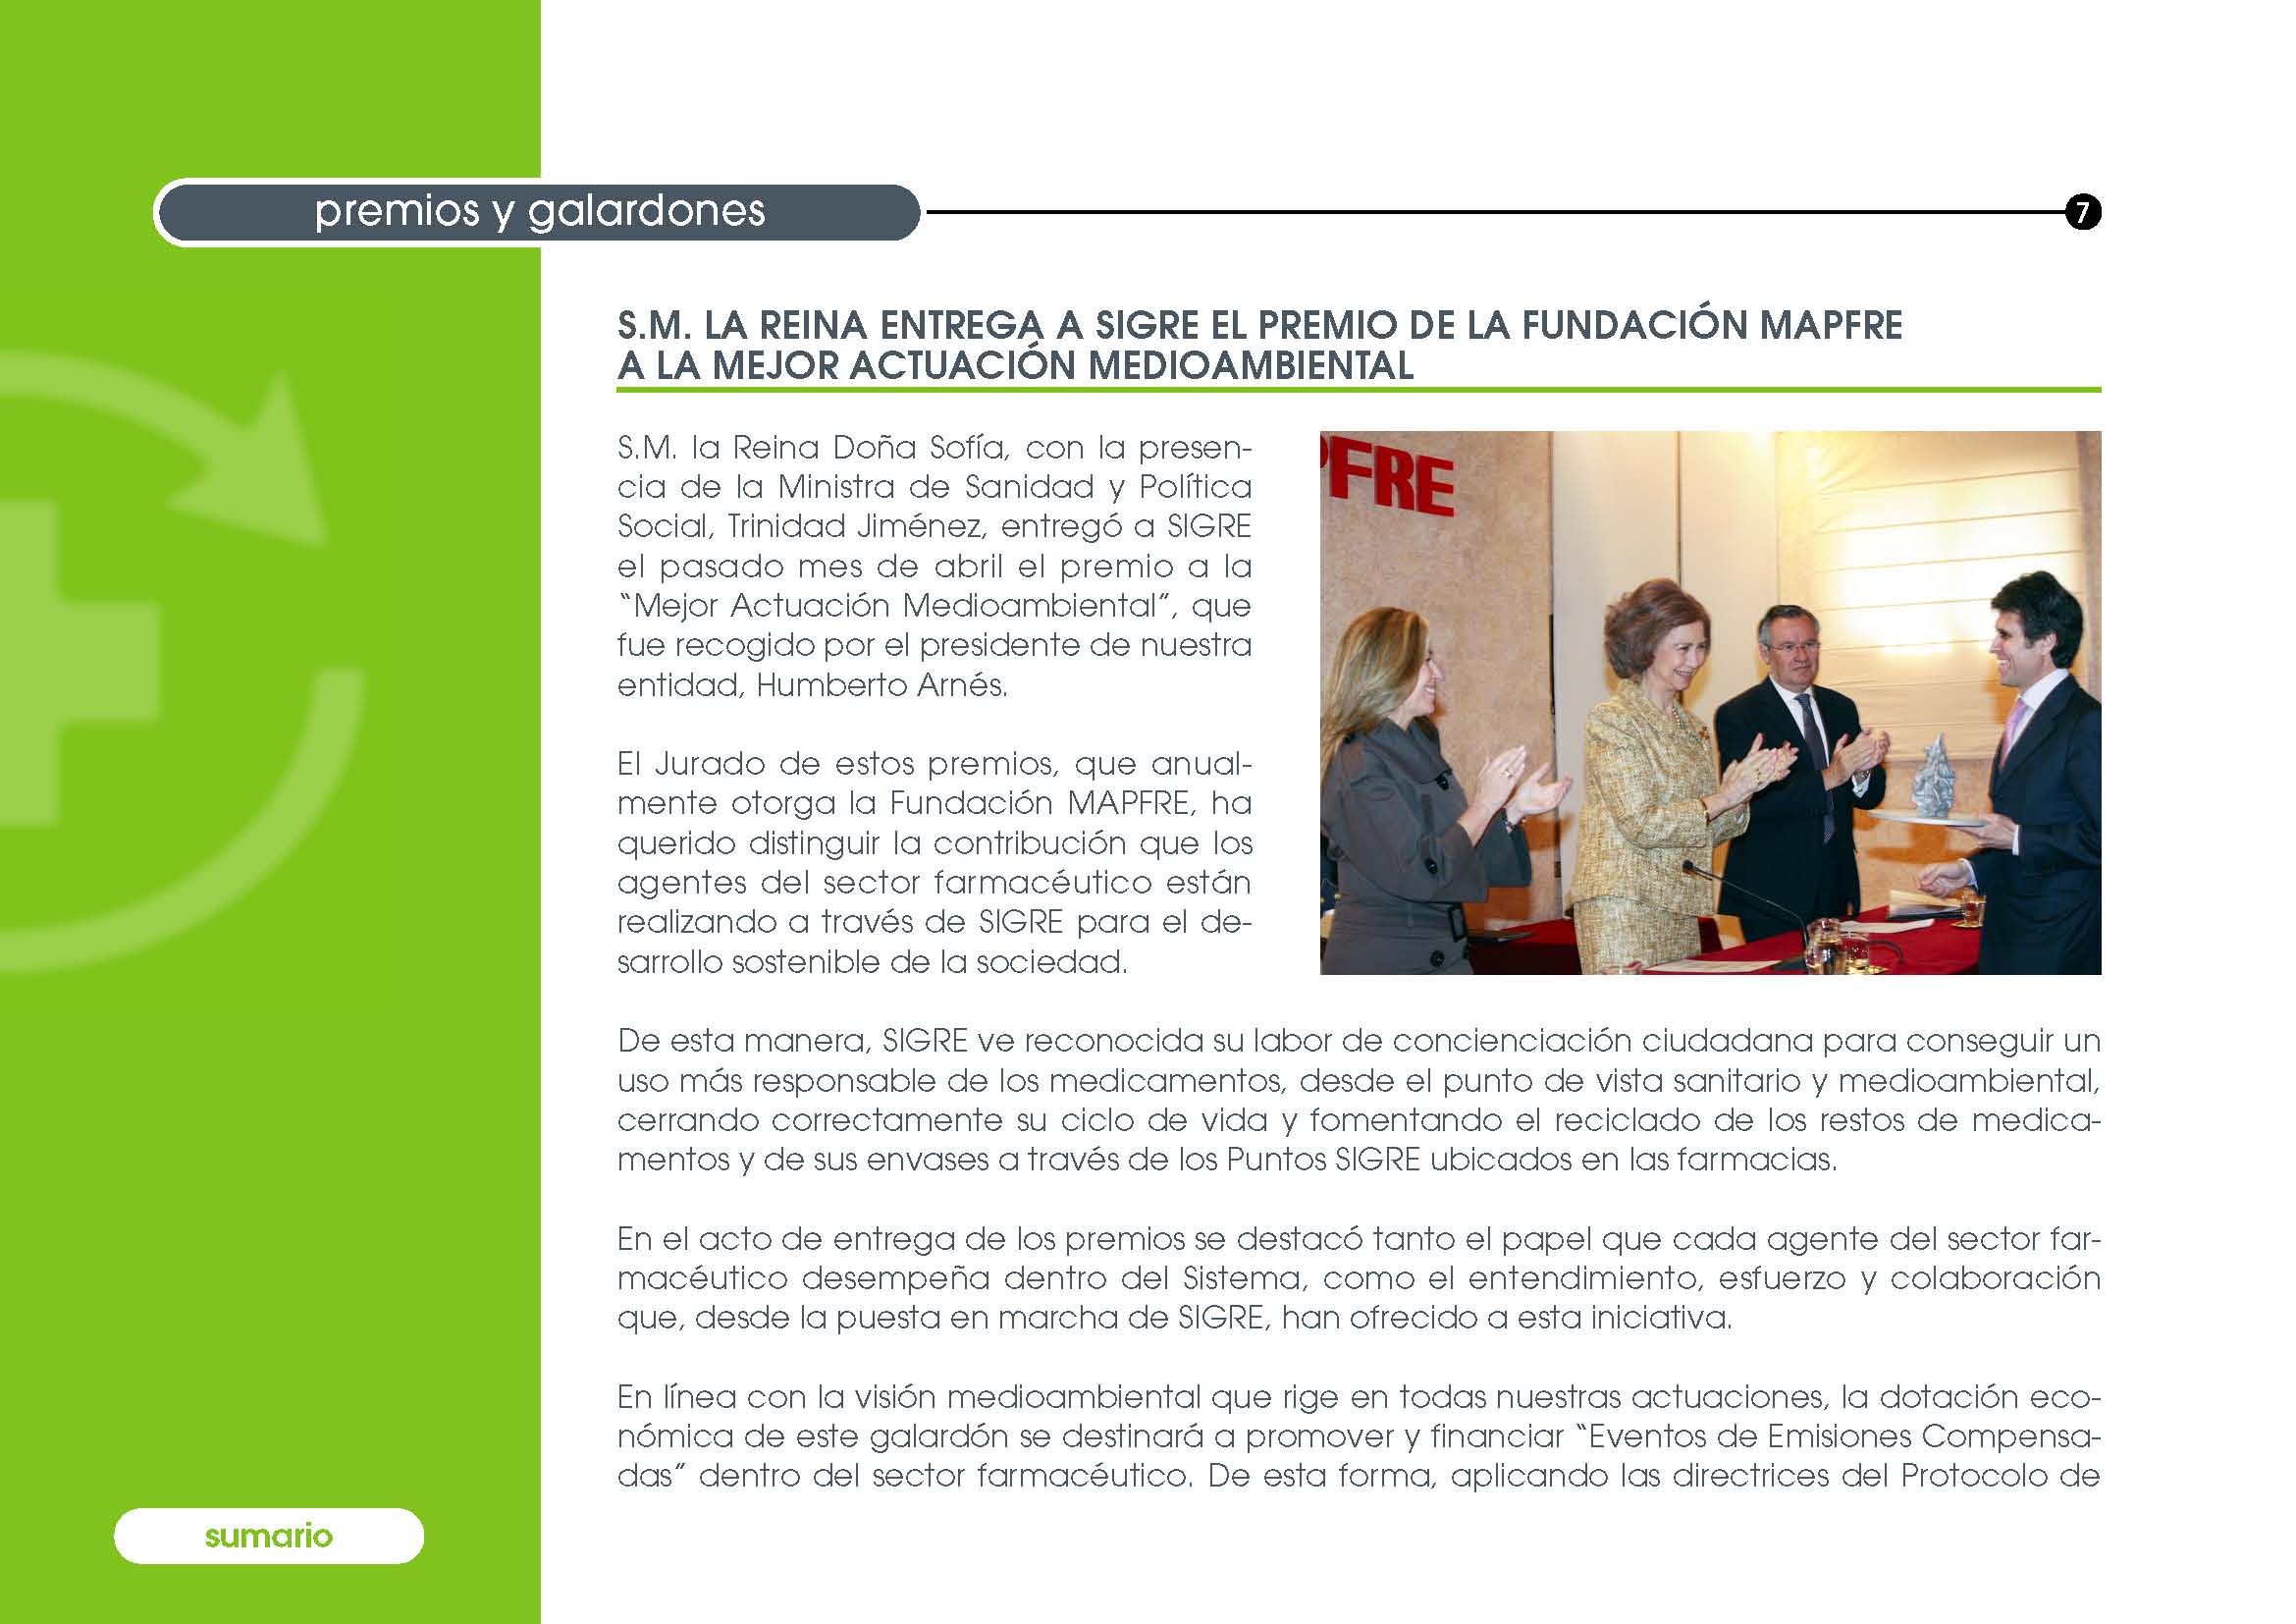 S.M. la Reina Doña Sofía hace entrega del Premio MAPFRE al Presidente de SIGRE, Humberto Arnés